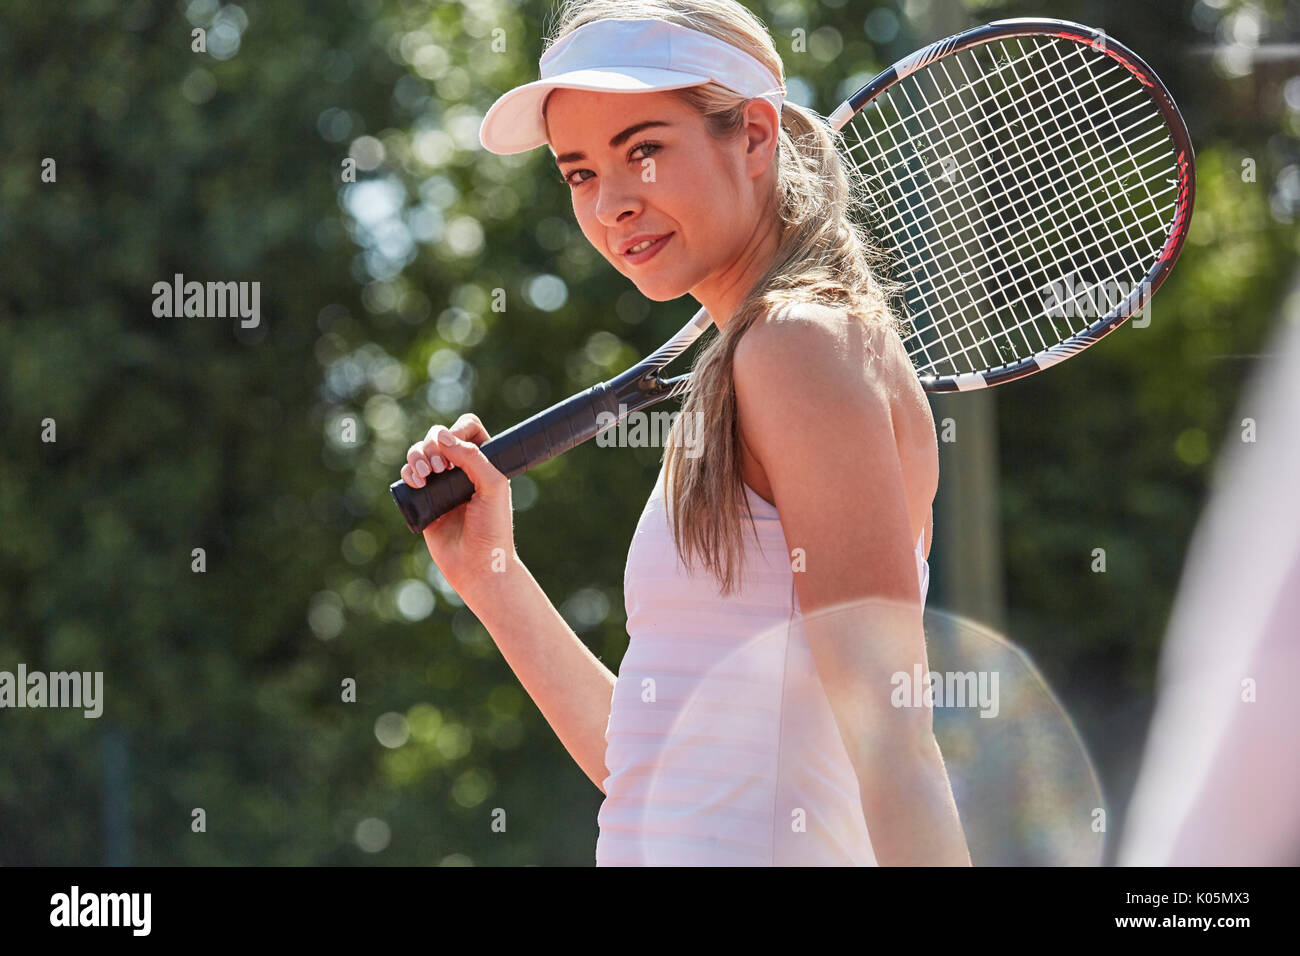 Portrait confiant tennis player holding tennis racket Banque D'Images